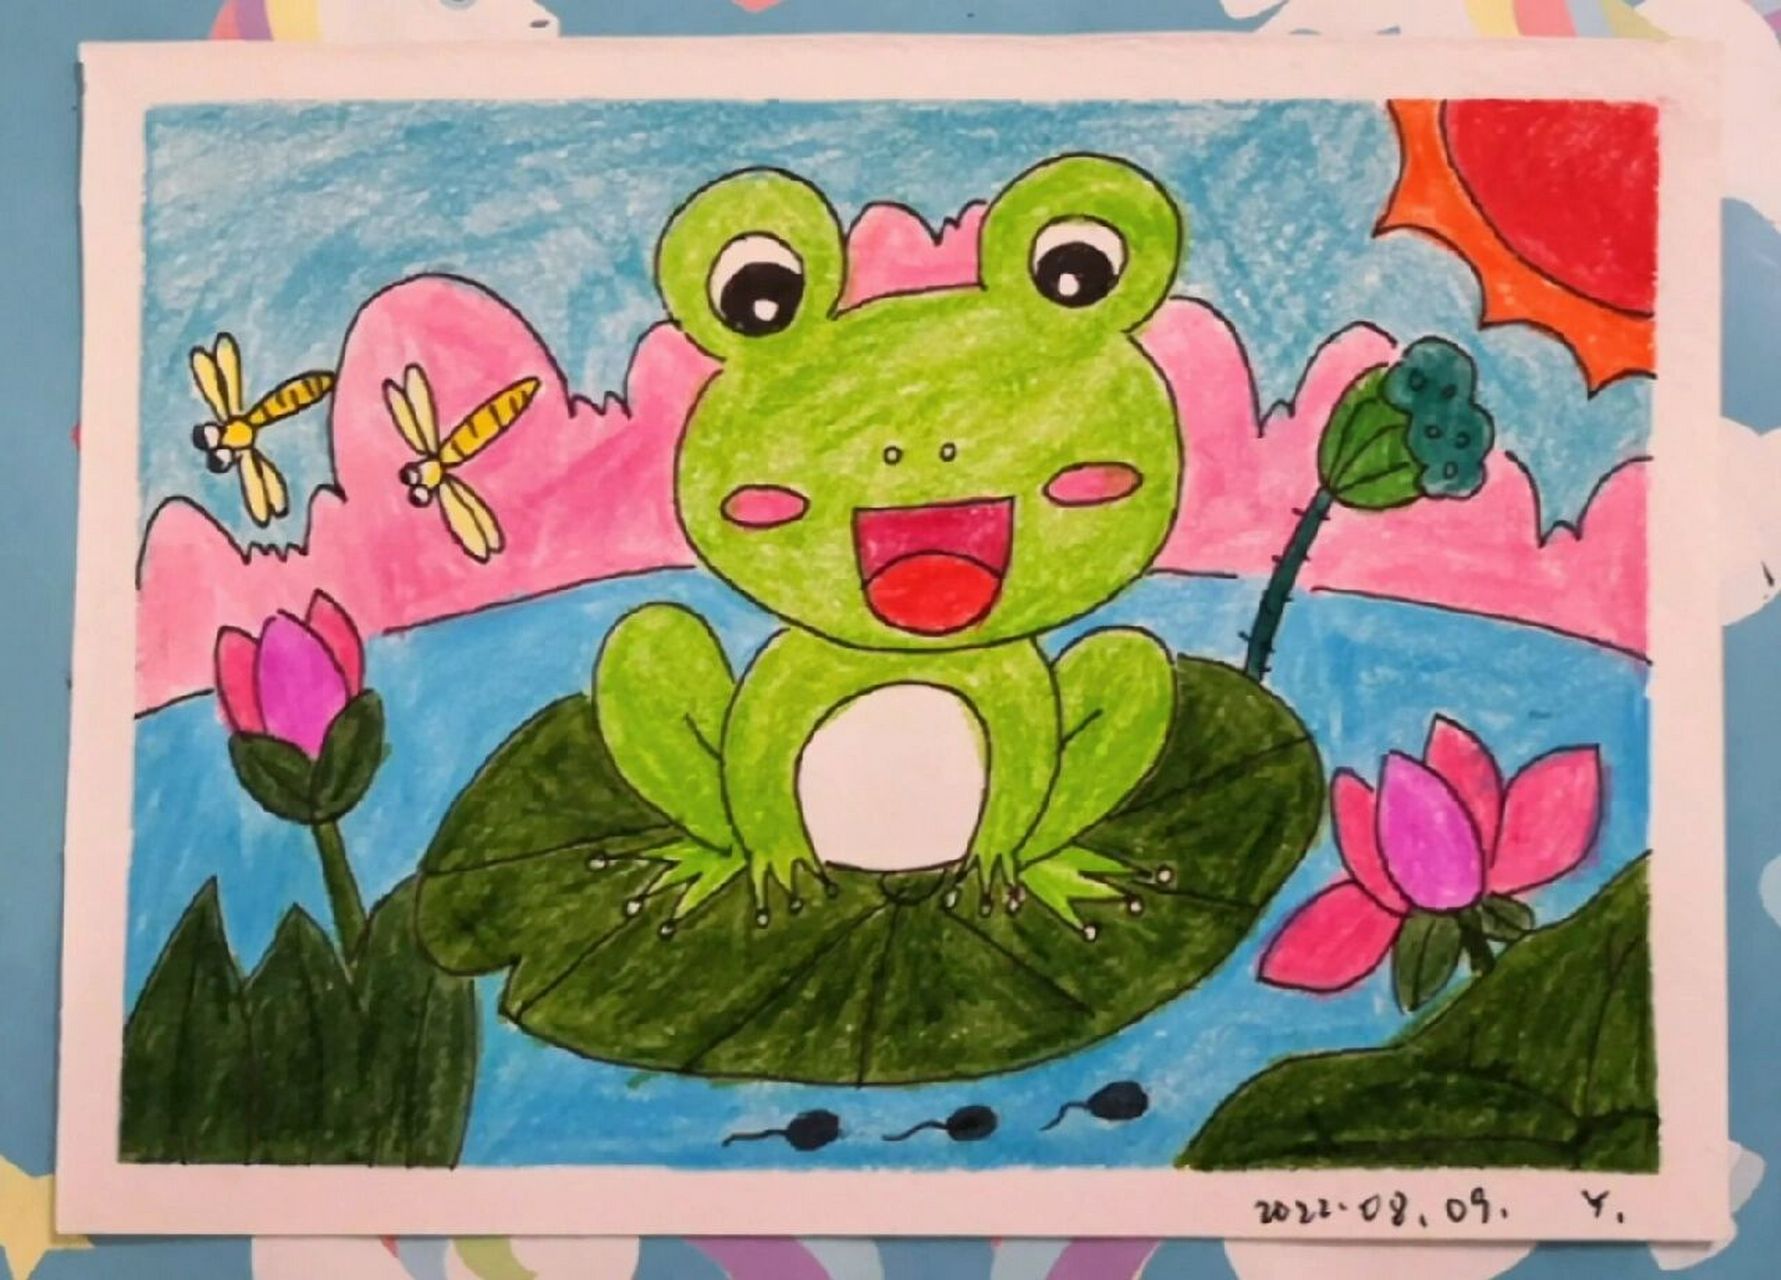 青蛙荷叶简笔画彩色图片